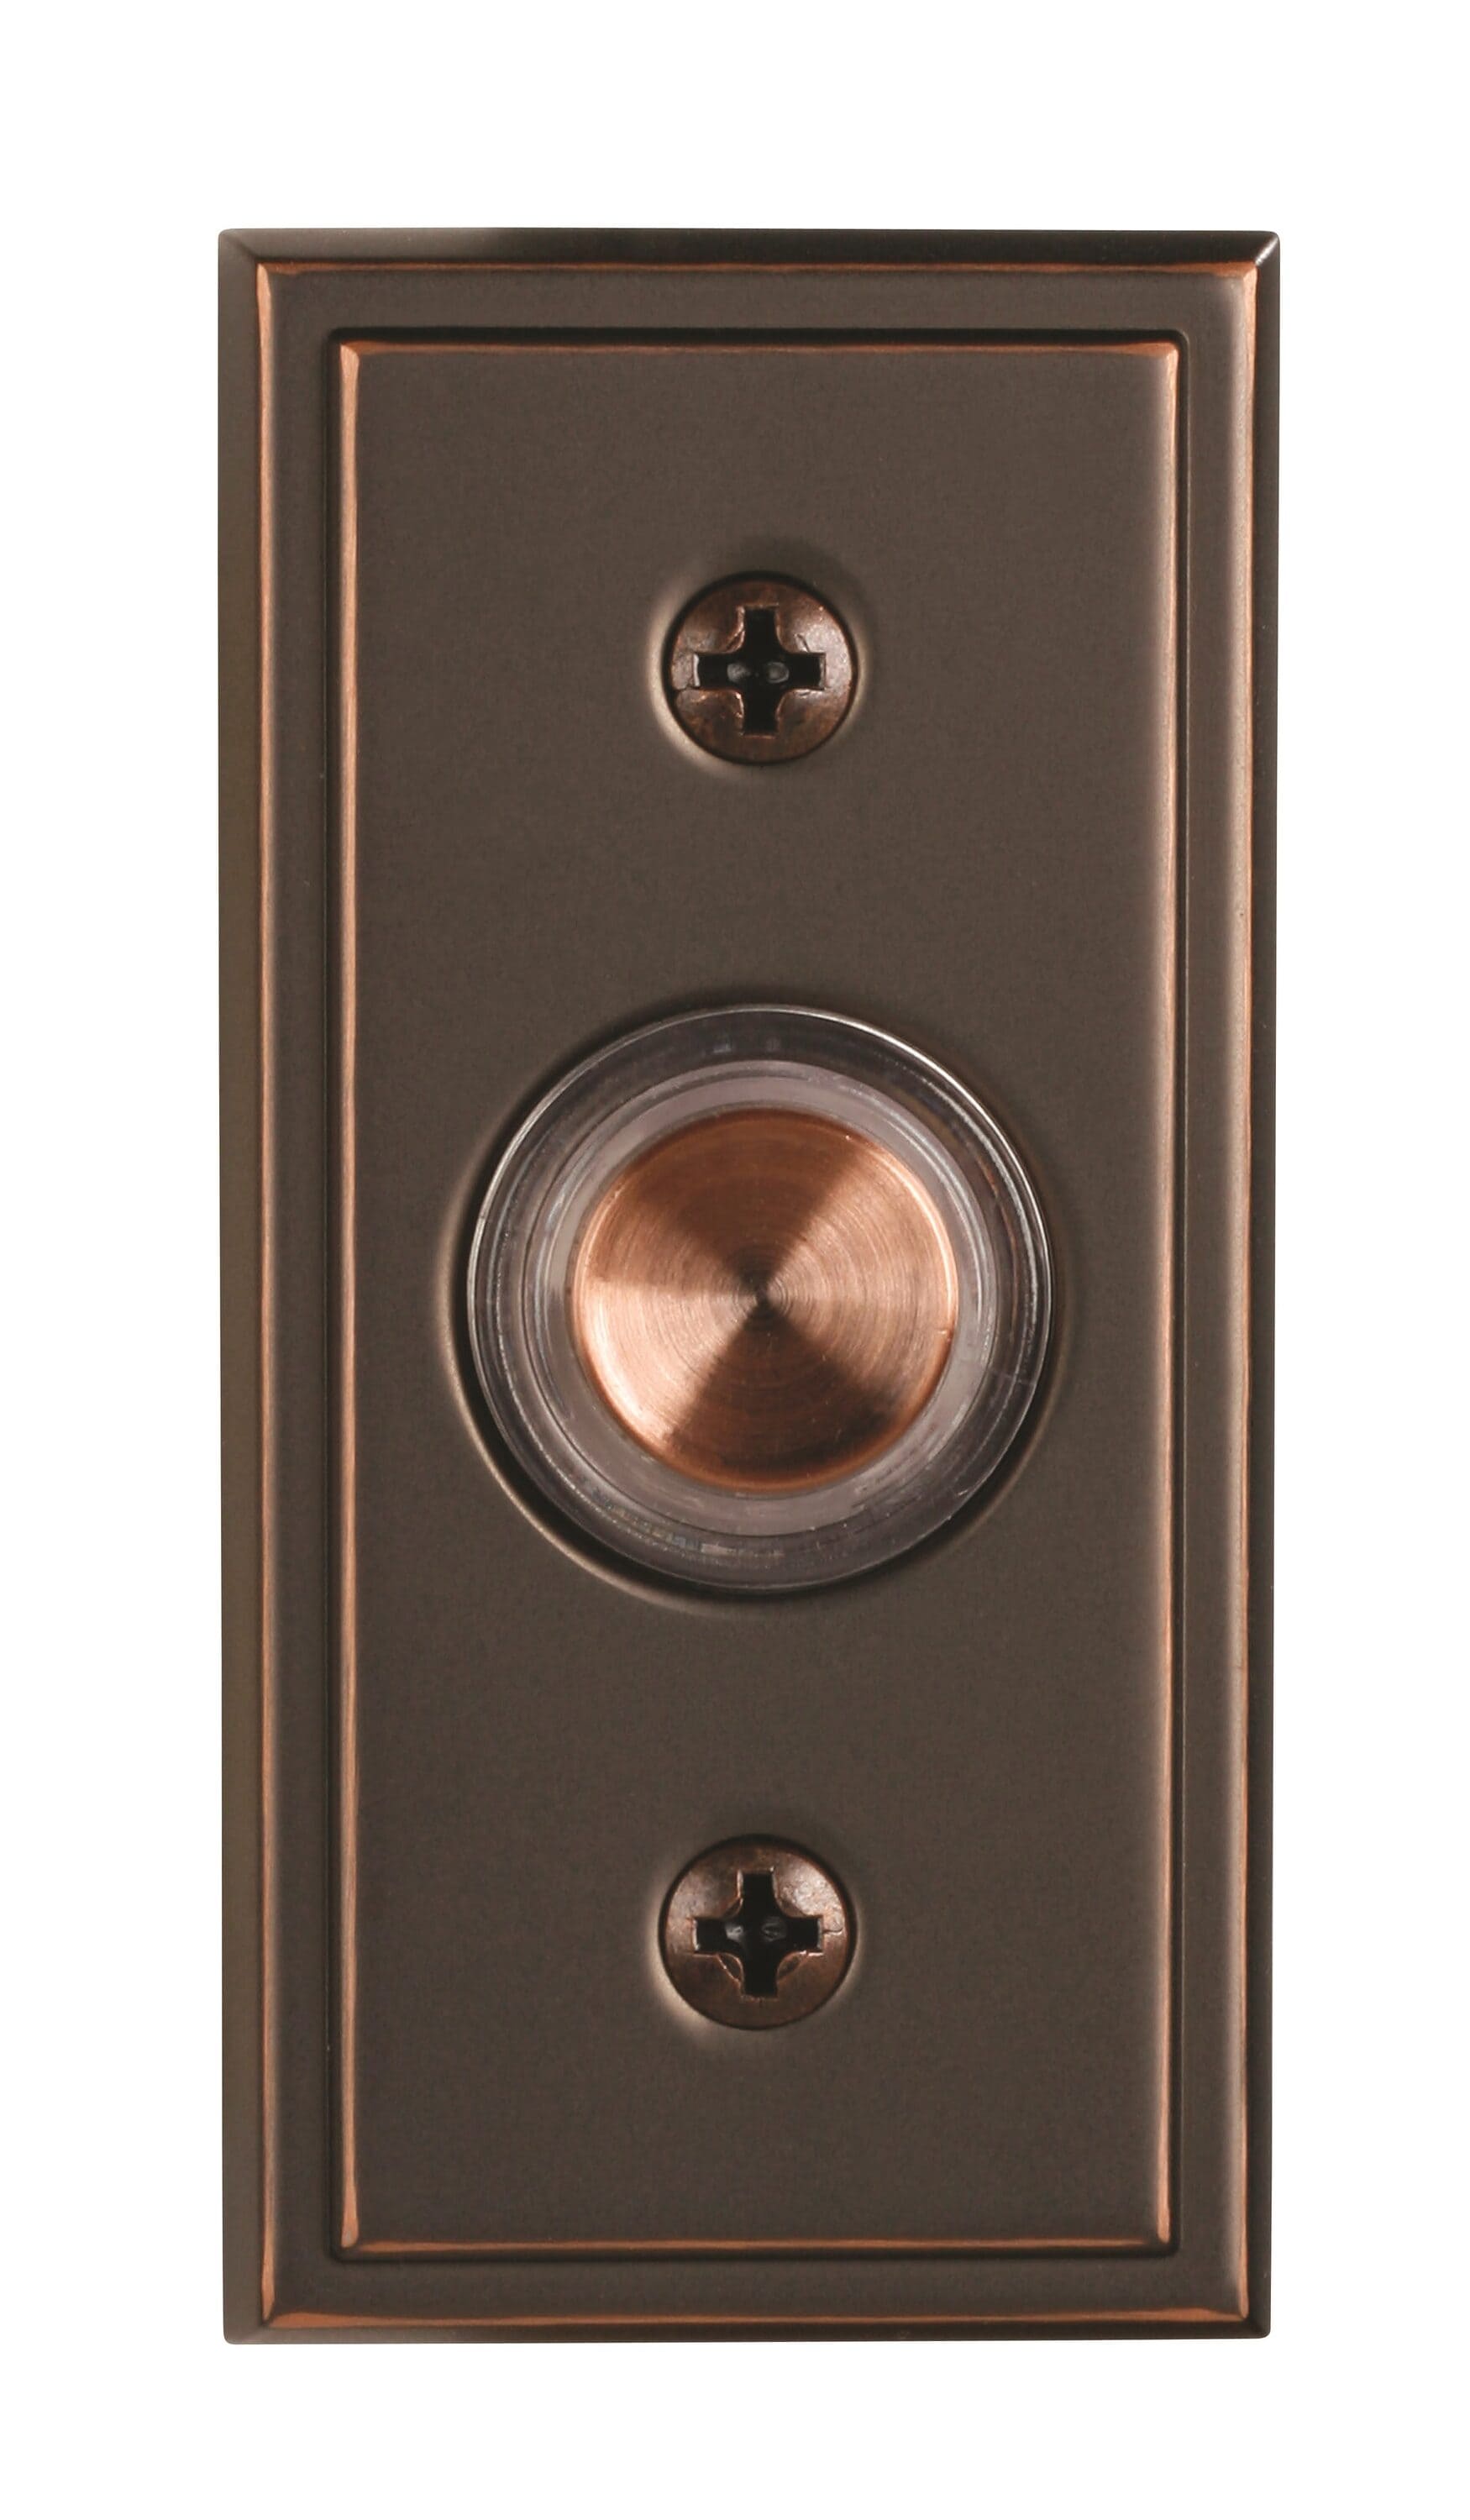 Industrial Chic Round Doorbell Button